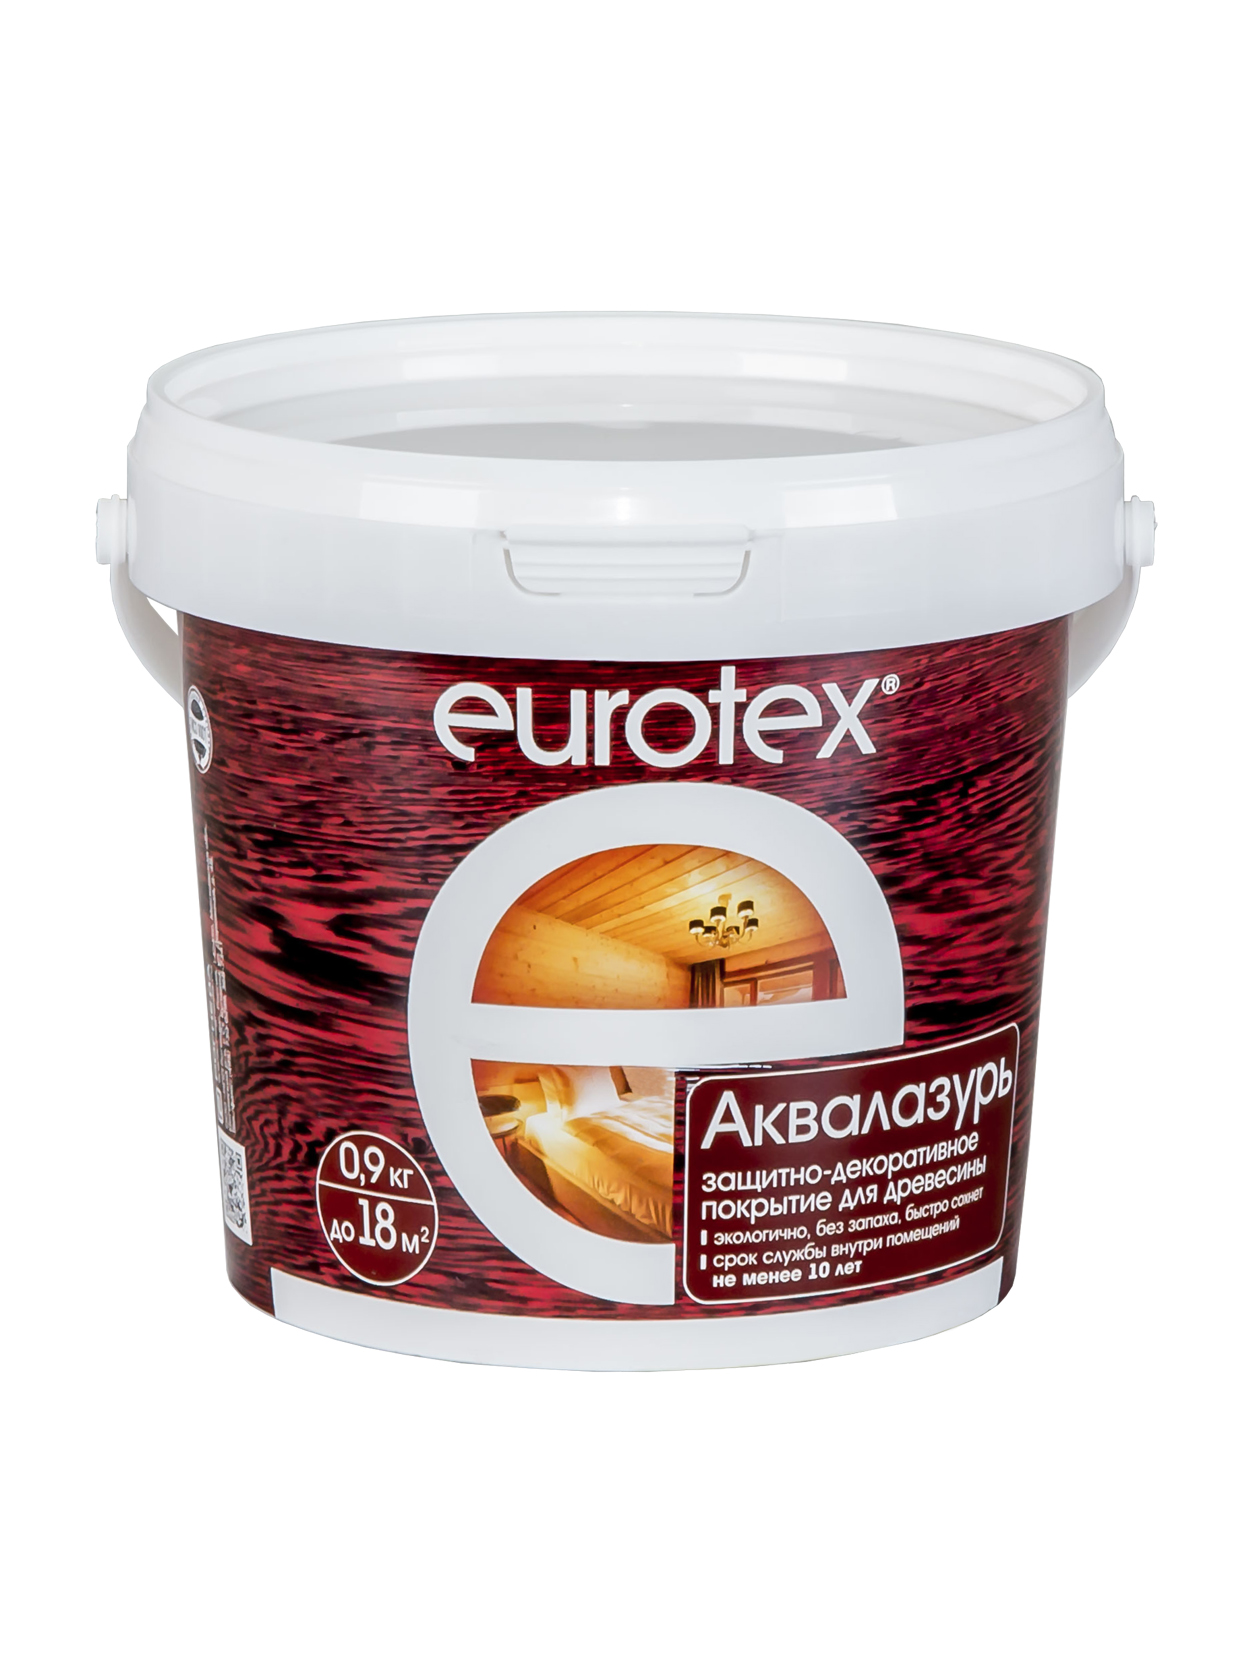 Покрытие Eurotex Аквалазурь, полуглянцевое, 0,9 кг, палисандр защитно декоративное покрытие для дерева eurotex аквалазурь полуглянцевое 9 кг белое